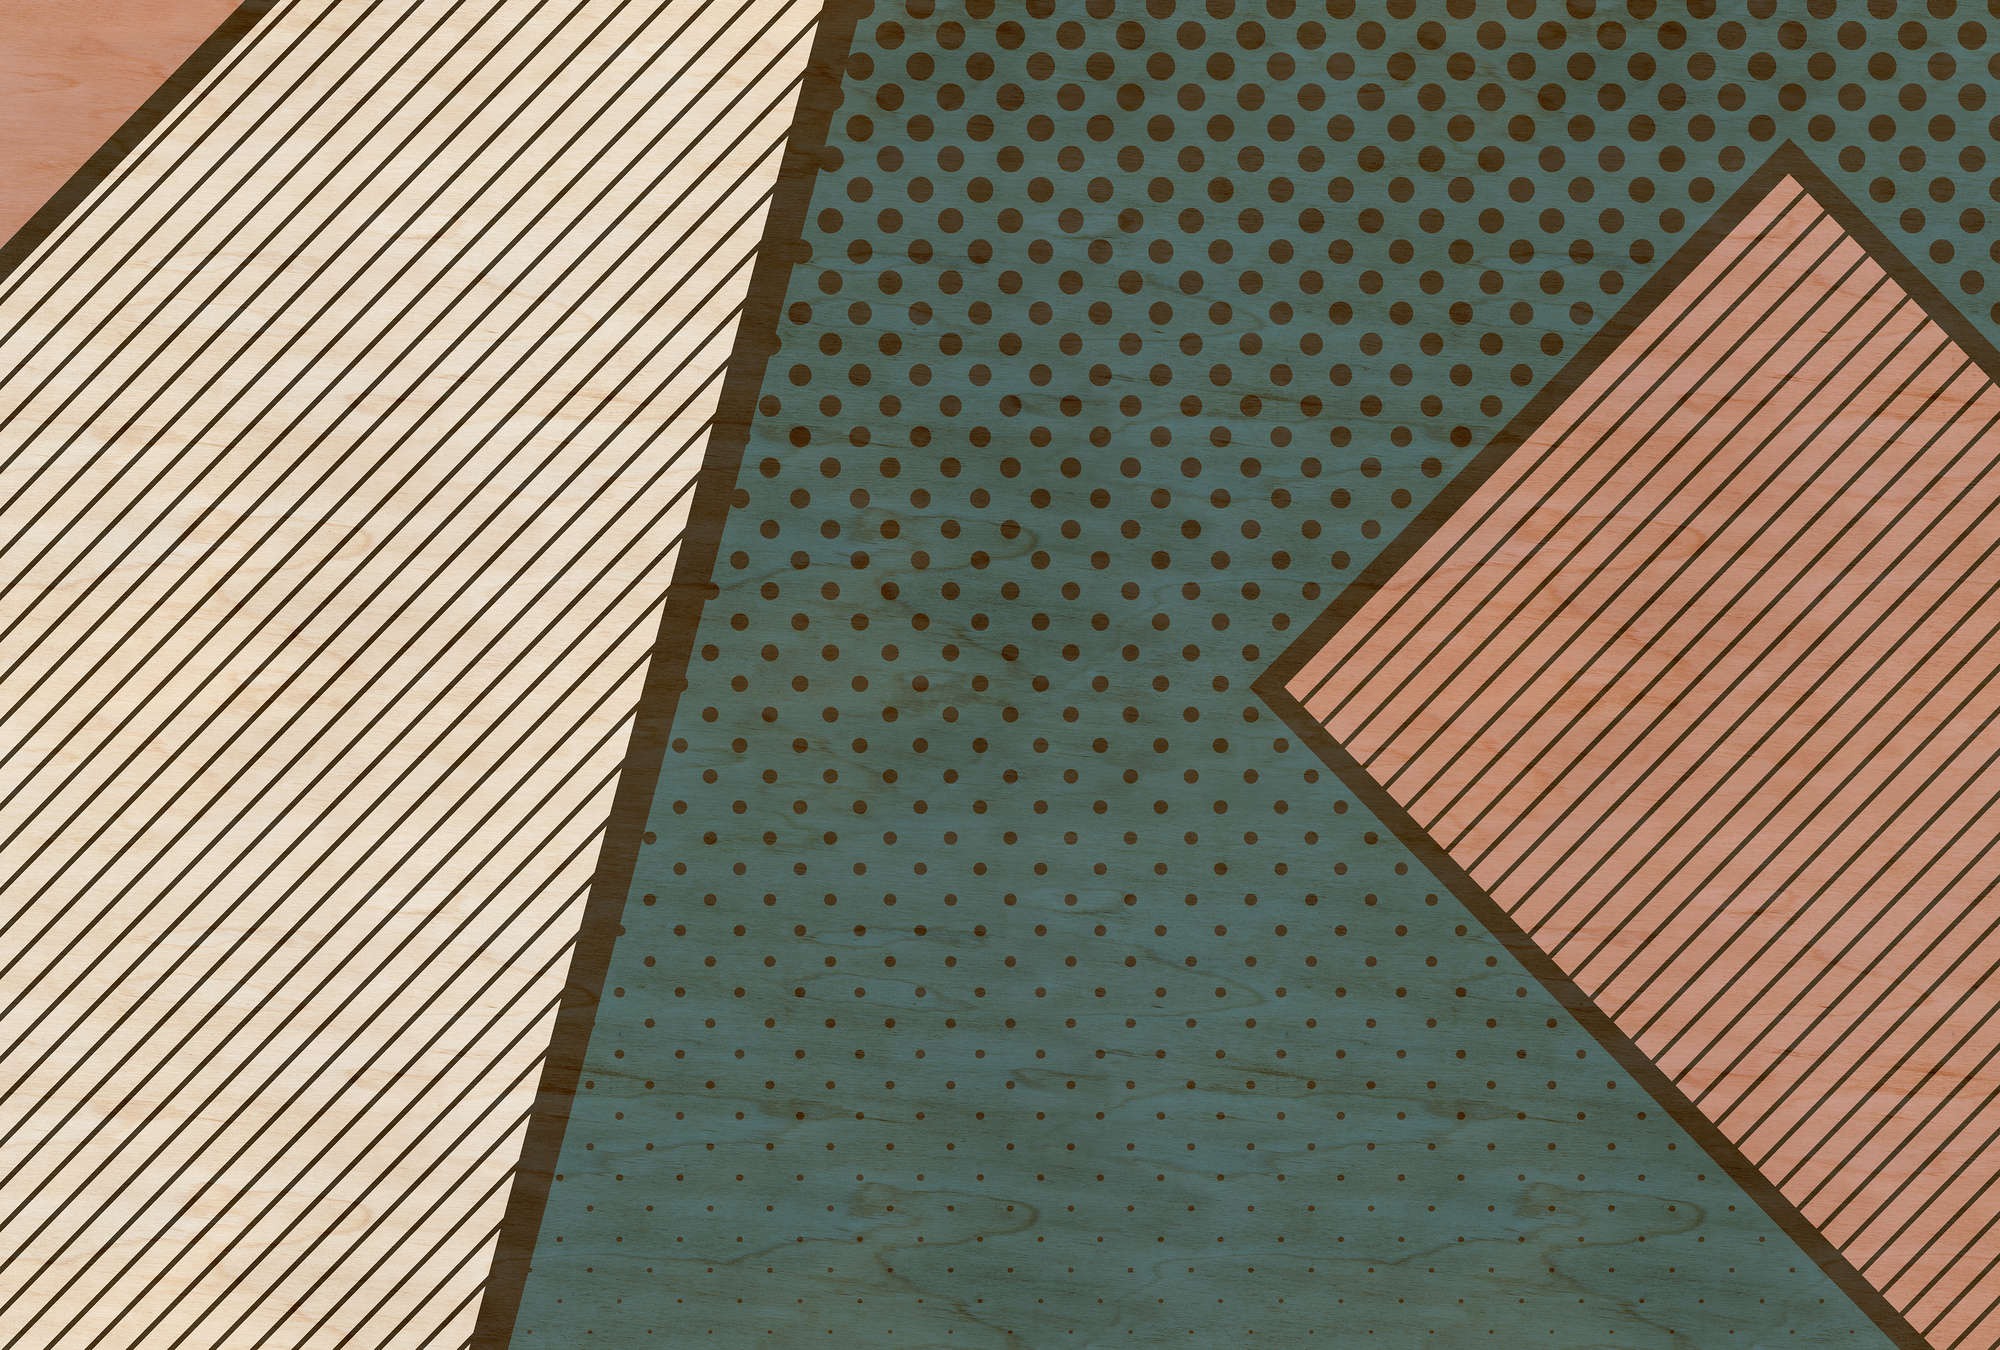             Bird gang 1 - papier peint à motifs, structure contreplaquée avec aplats de couleurs modernes - beige, rose | structure intissé
        